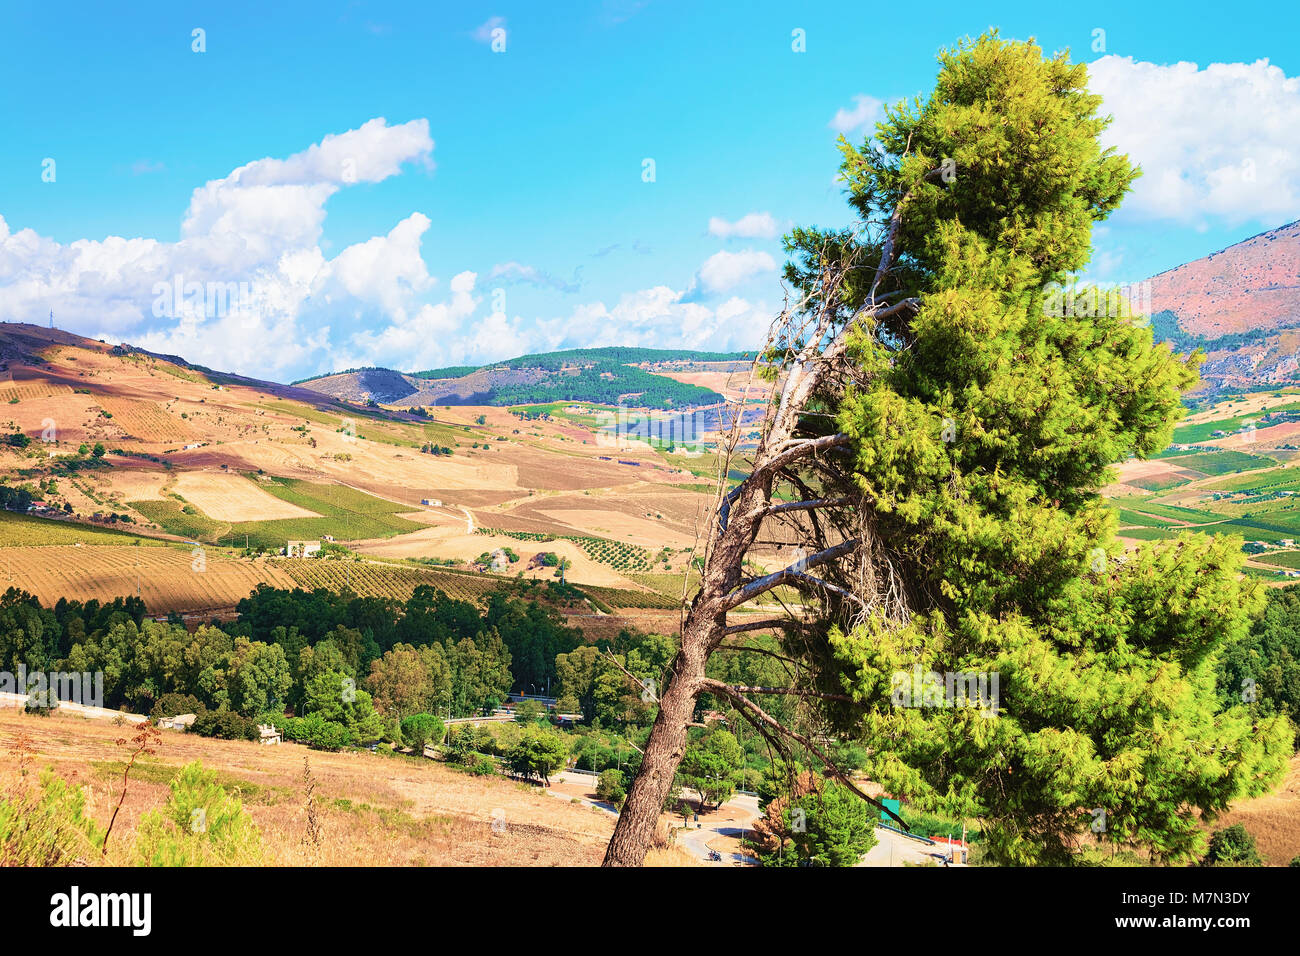 Landscape in Segesta, in Sicily, Italy Stock Photo